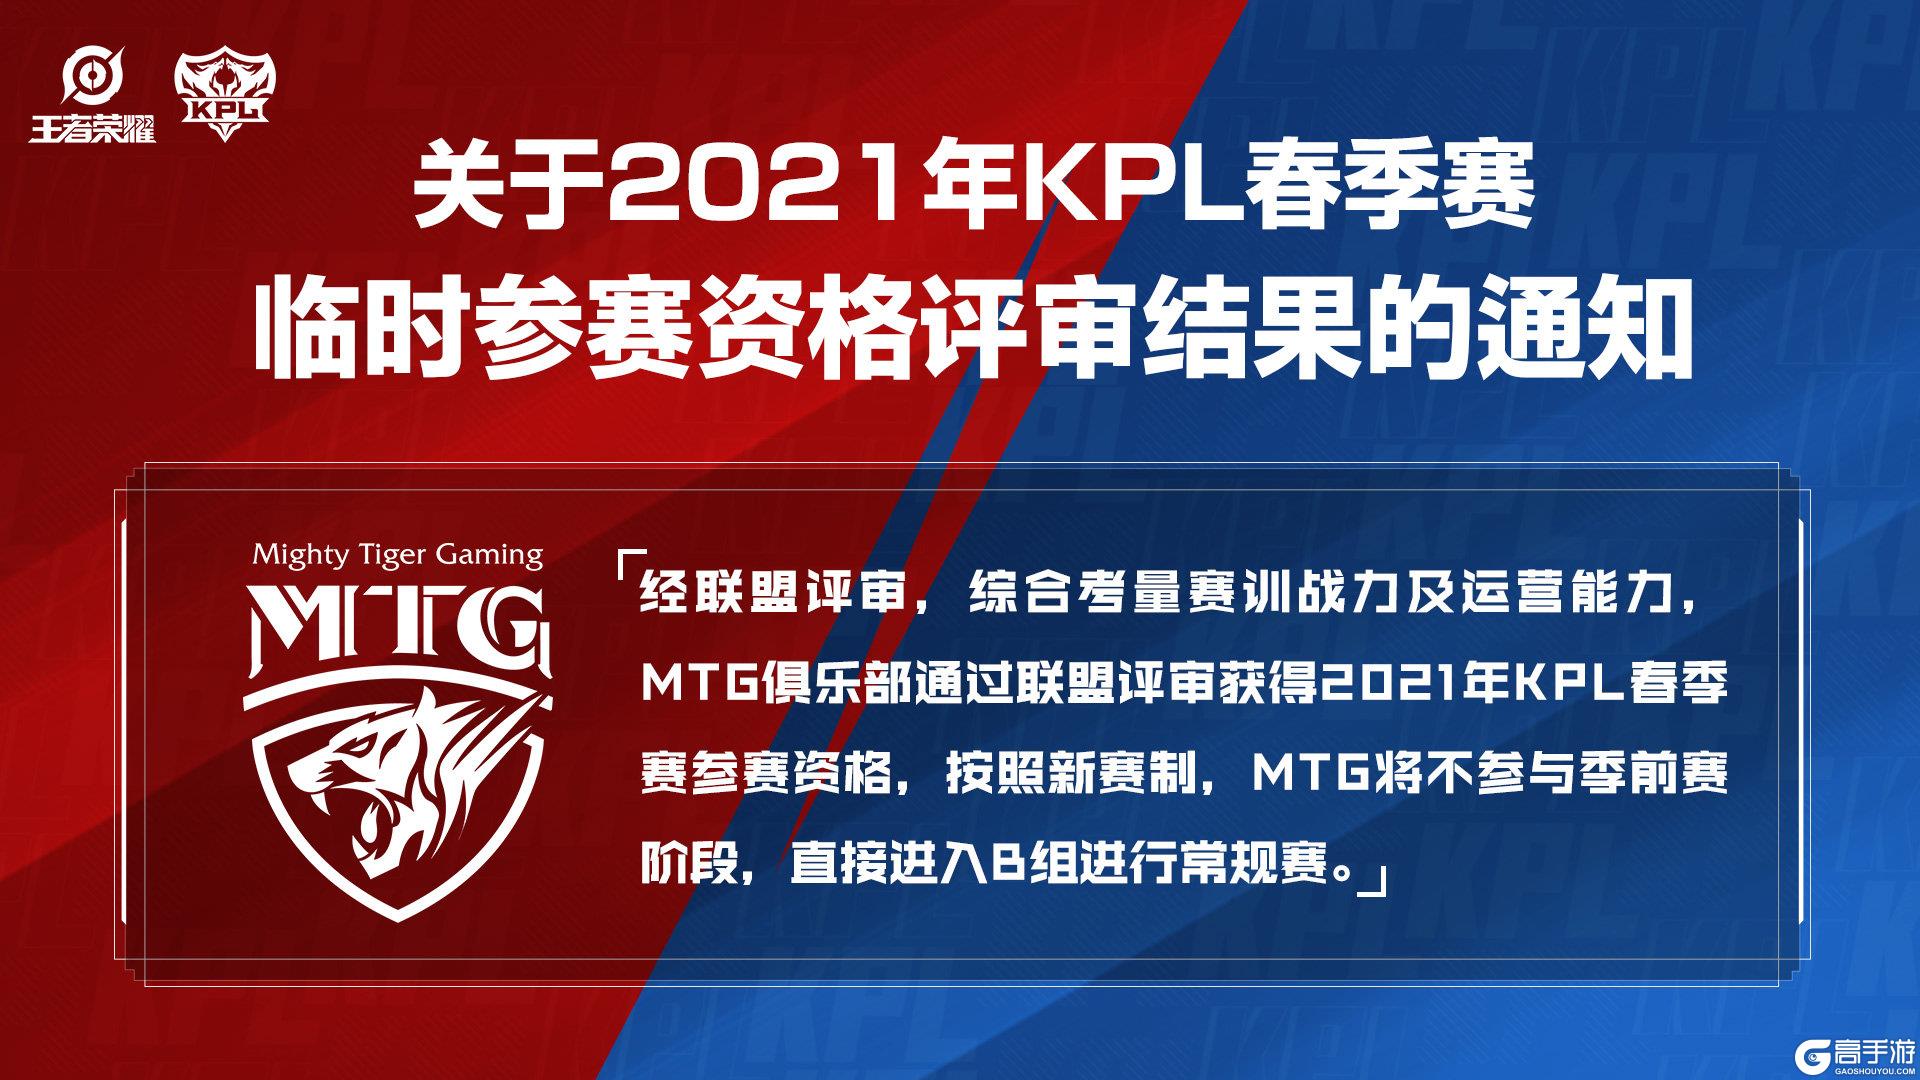 《王者荣耀》关于2021年KPL春季赛临时参赛资格评审结果的通知